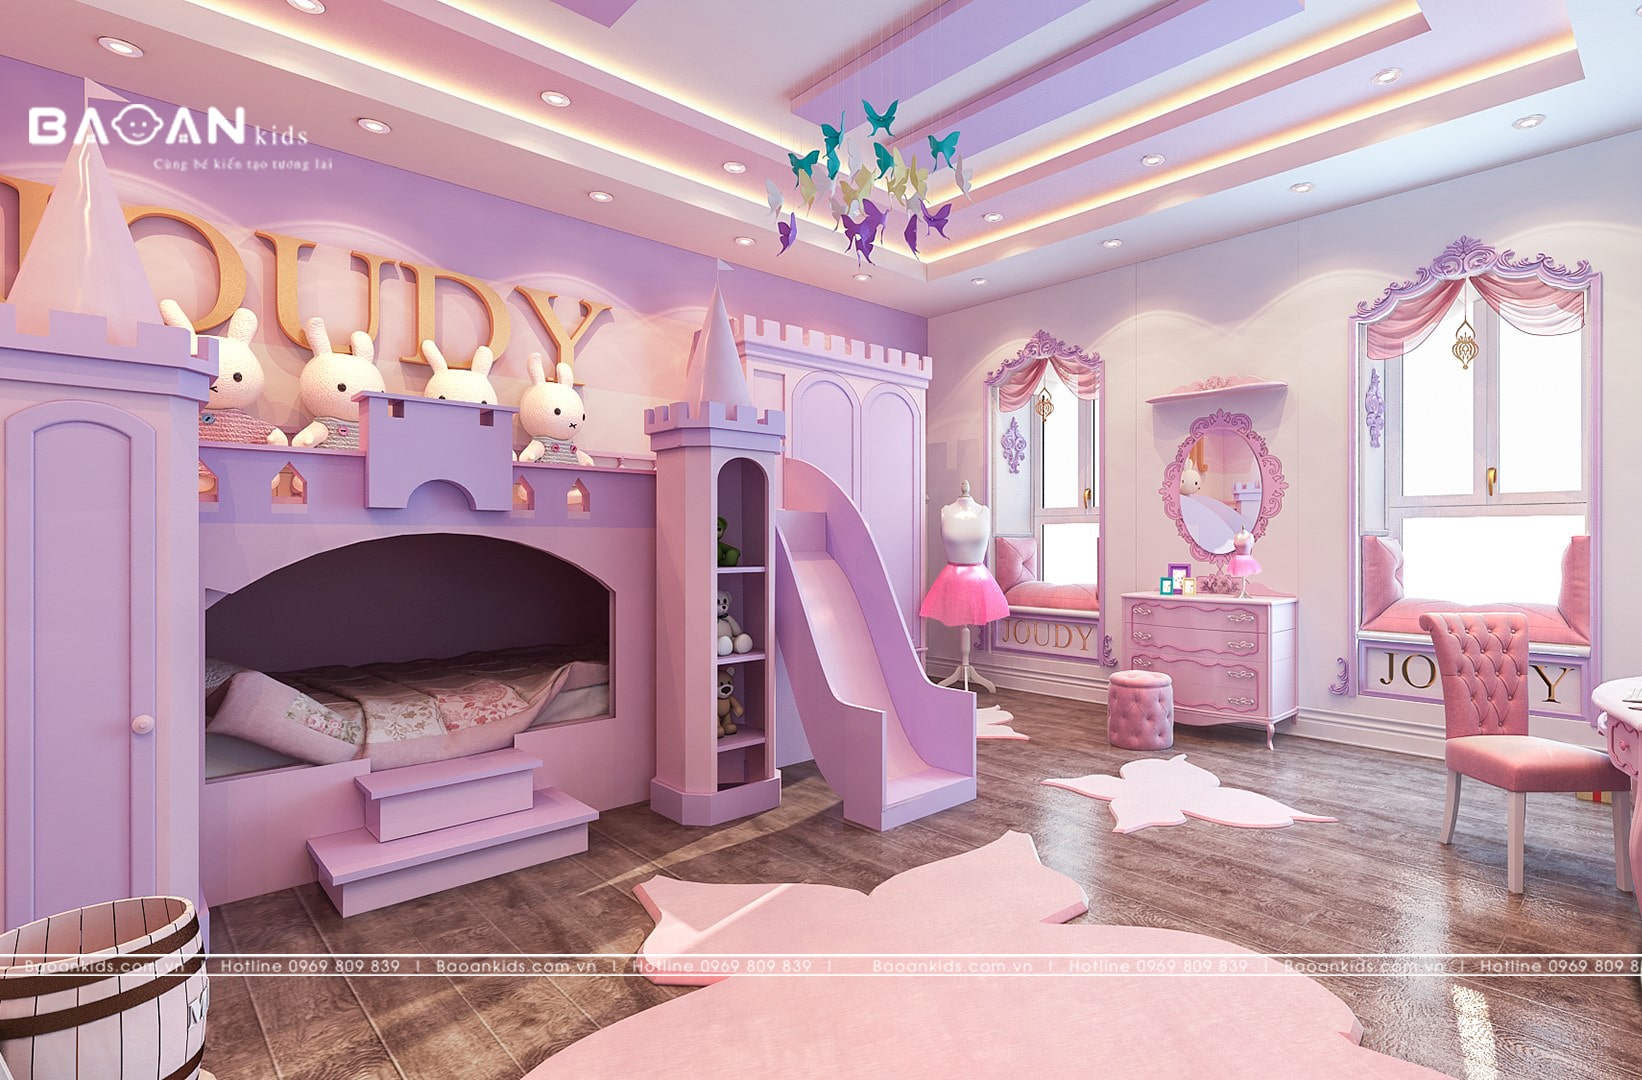 Mẫu thiết kế phòng ngủ tân cổ điển màu hồng dễ thương dành cho bé gái tại  Hà Nội  PNCDH 001  Phòng ngủ màu hồng Thiết kế Thiết kế phòng